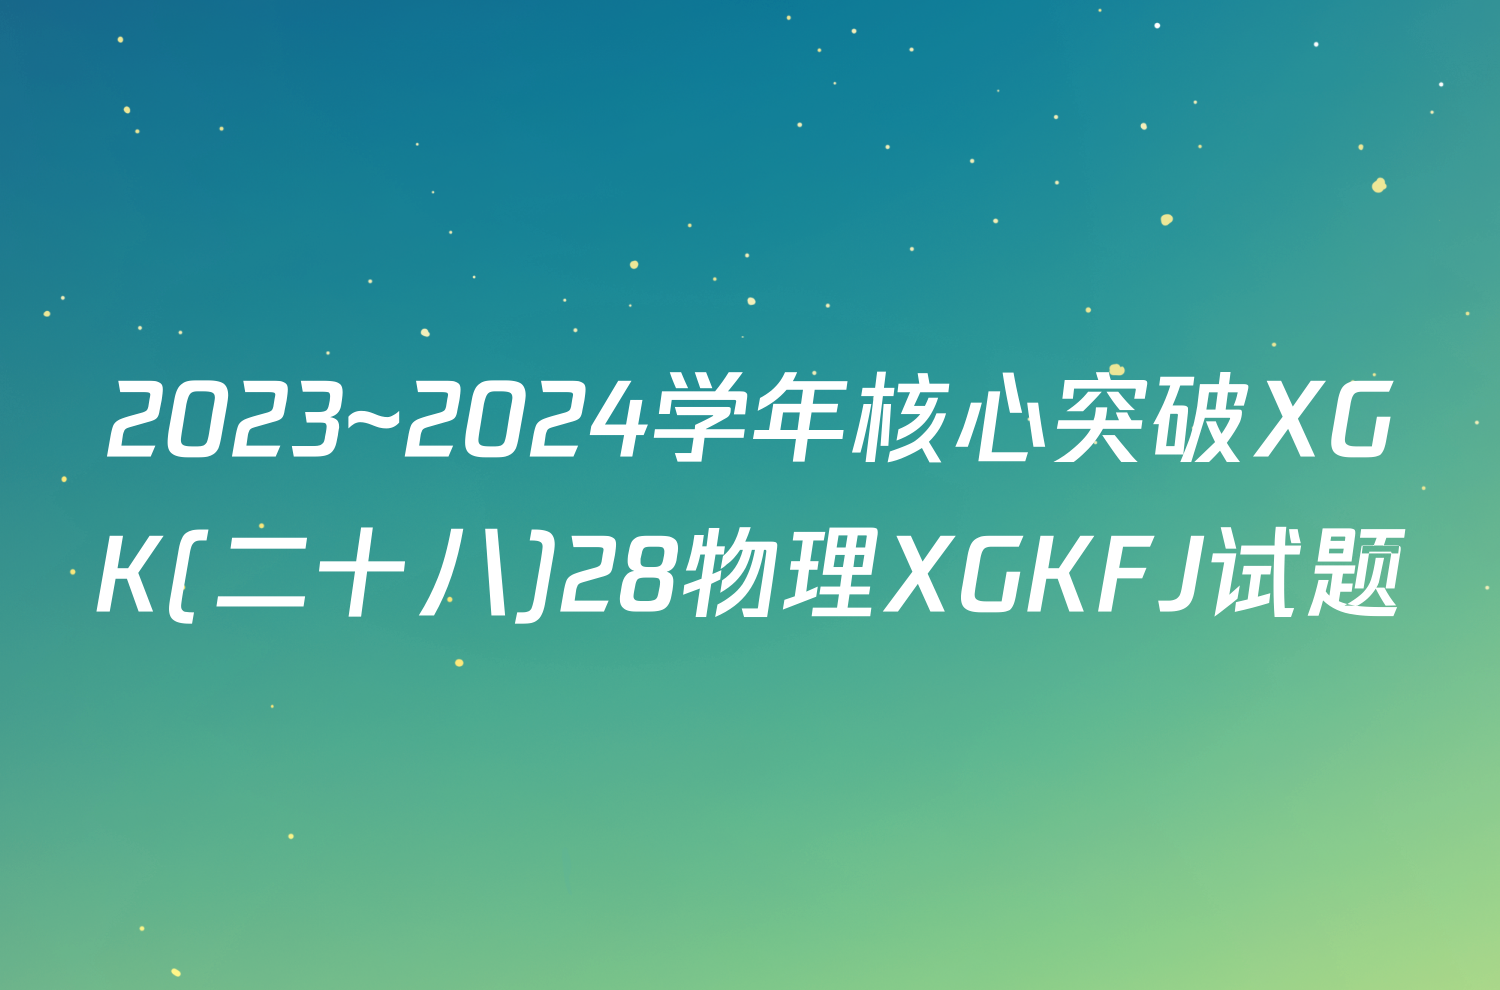 2023~2024学年核心突破XGK(二十八)28物理XGKFJ试题